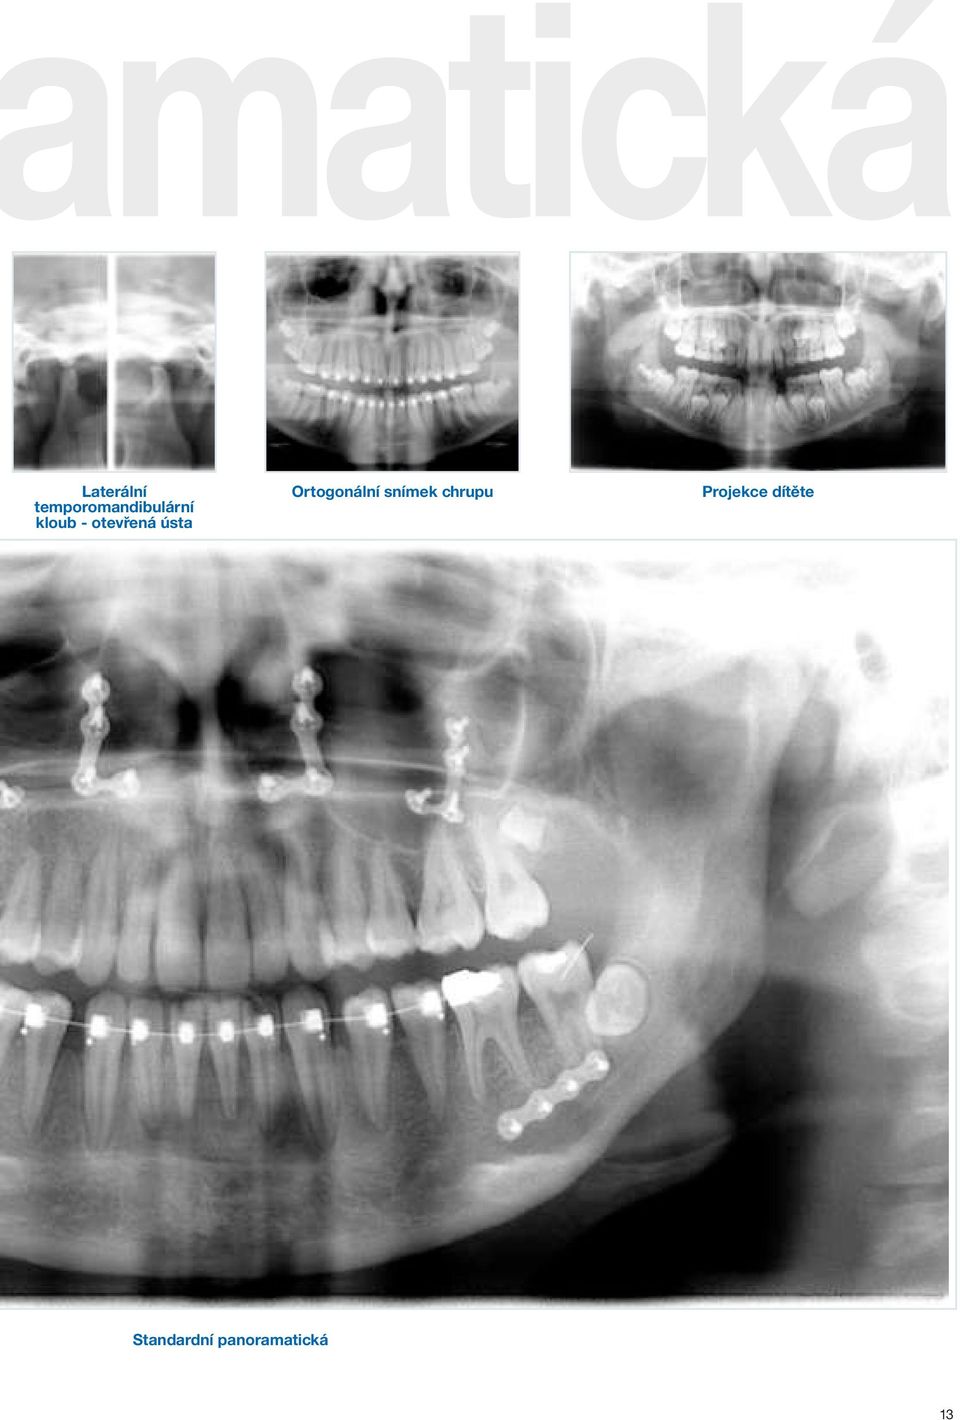 Orthoralix Panoramatický rentgen. Panoramatický a cefalometrický systém s  širokou škálou výhod - PDF Free Download